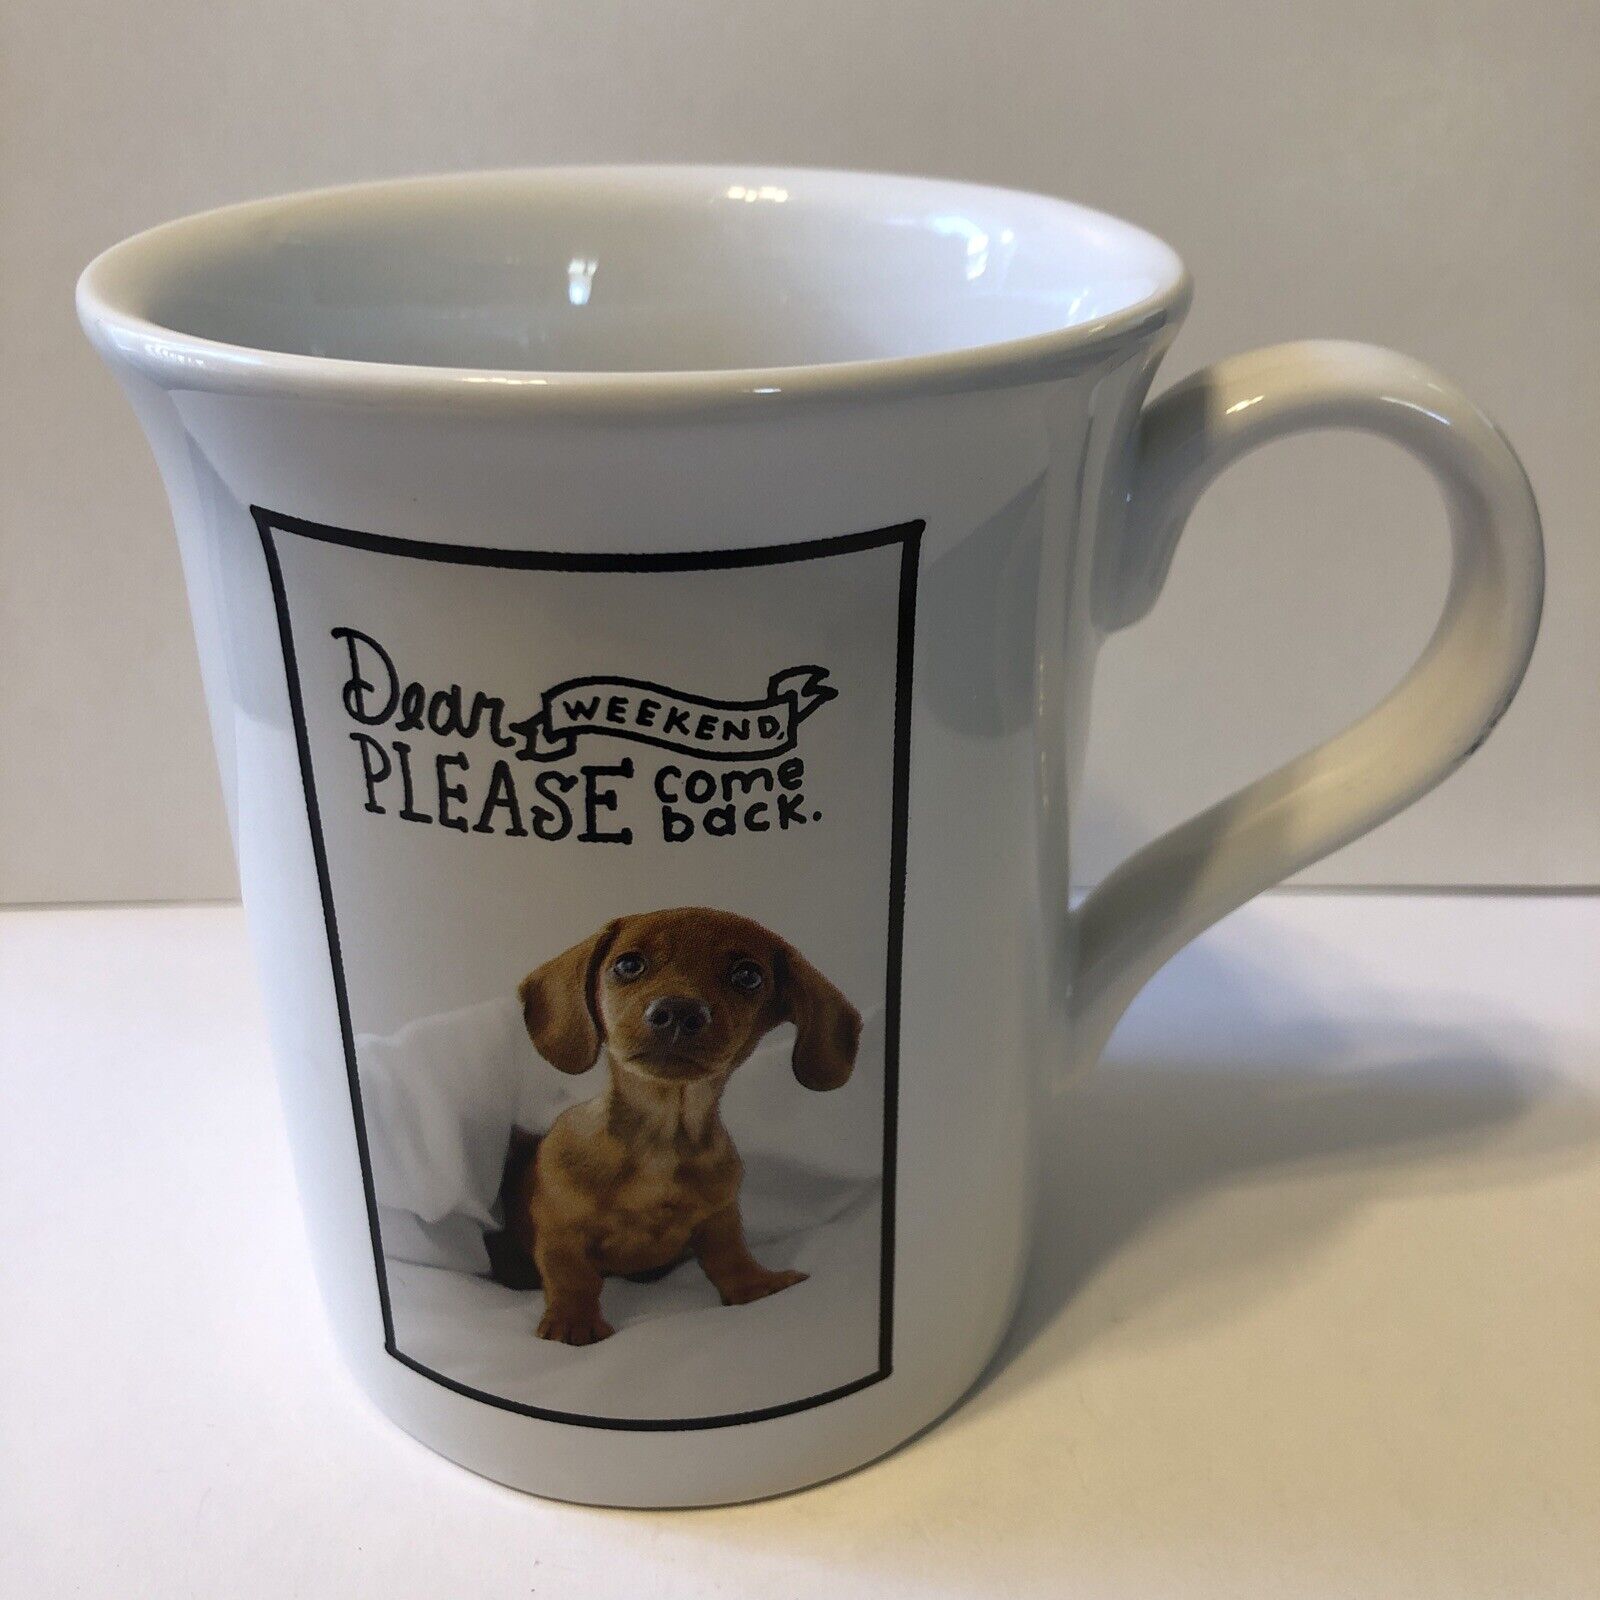 Hallmark Ashley Garcia Coffee Mug Dear Weekend Please Come Back Puppy Dog